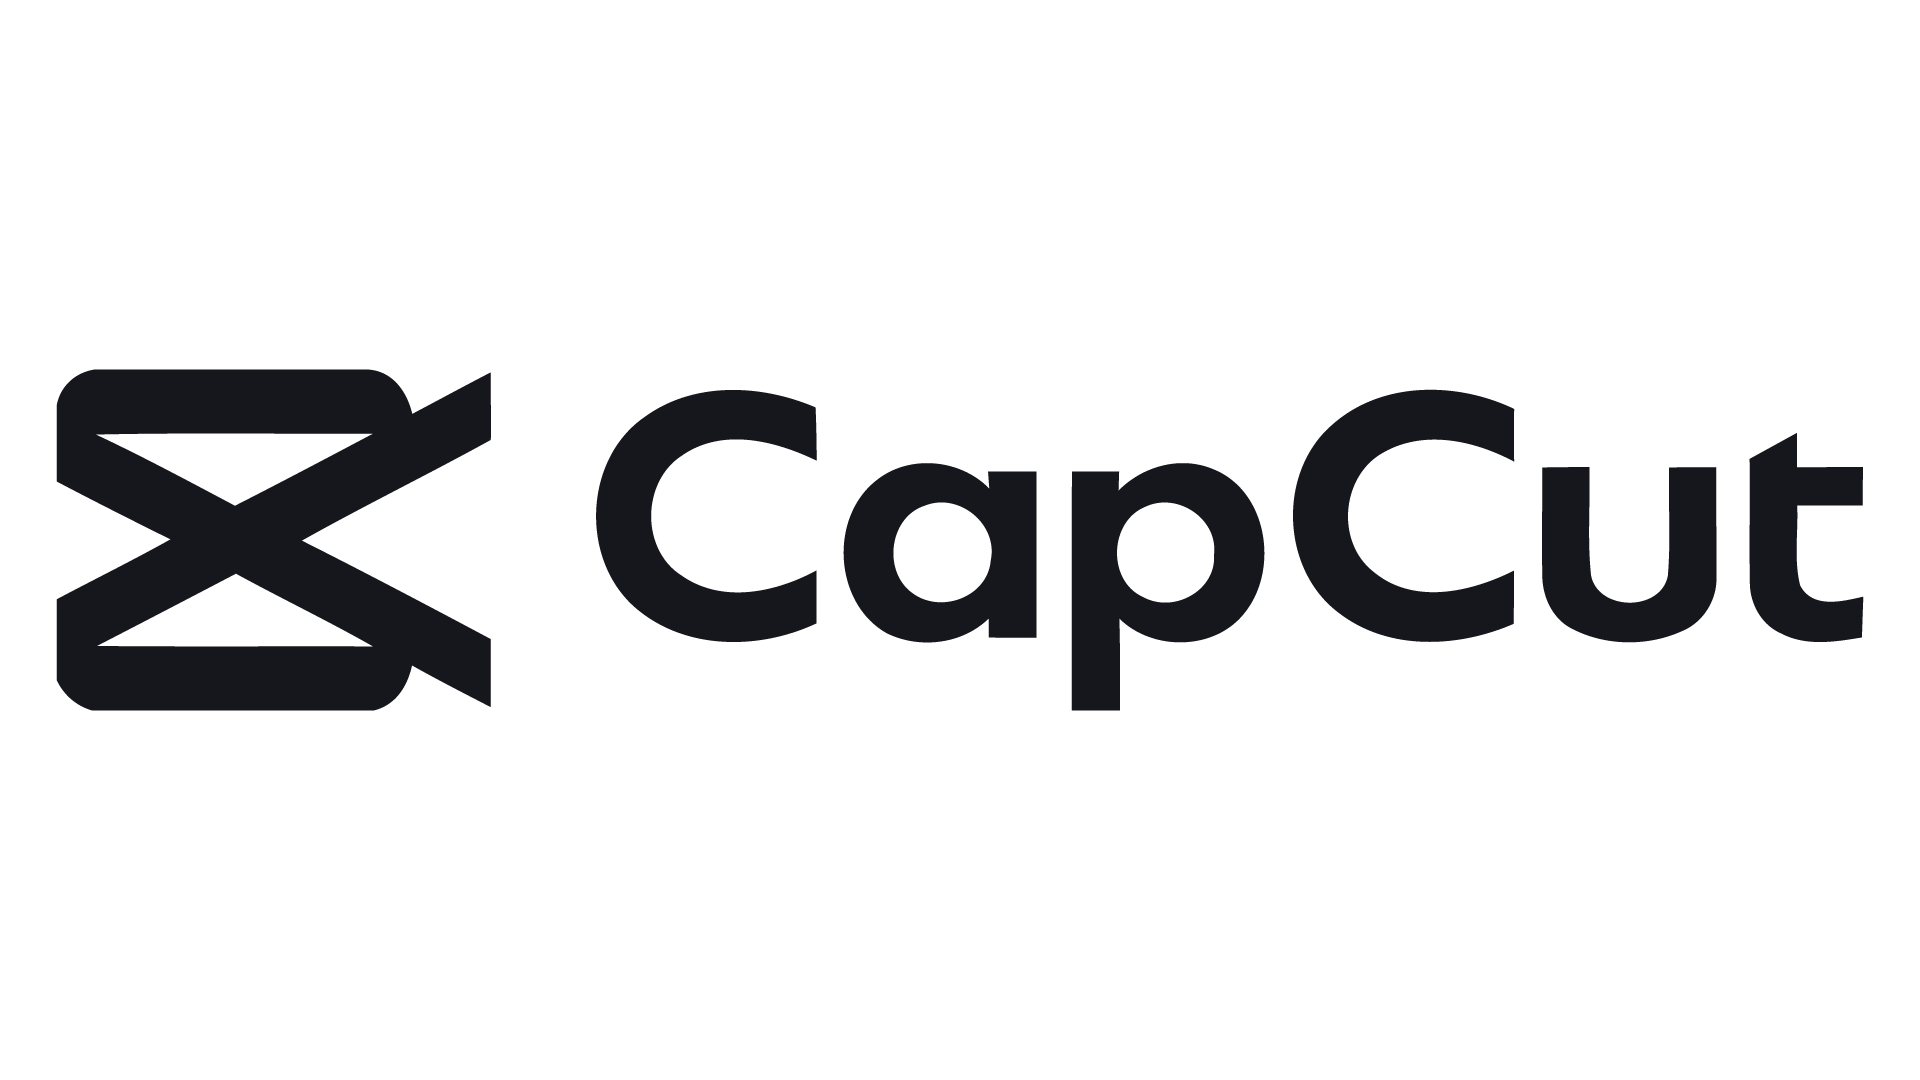 CAPCUT логотип. Приложение CAPCUT. Значок CAPCUT PNG. Black CAPCUT logo.